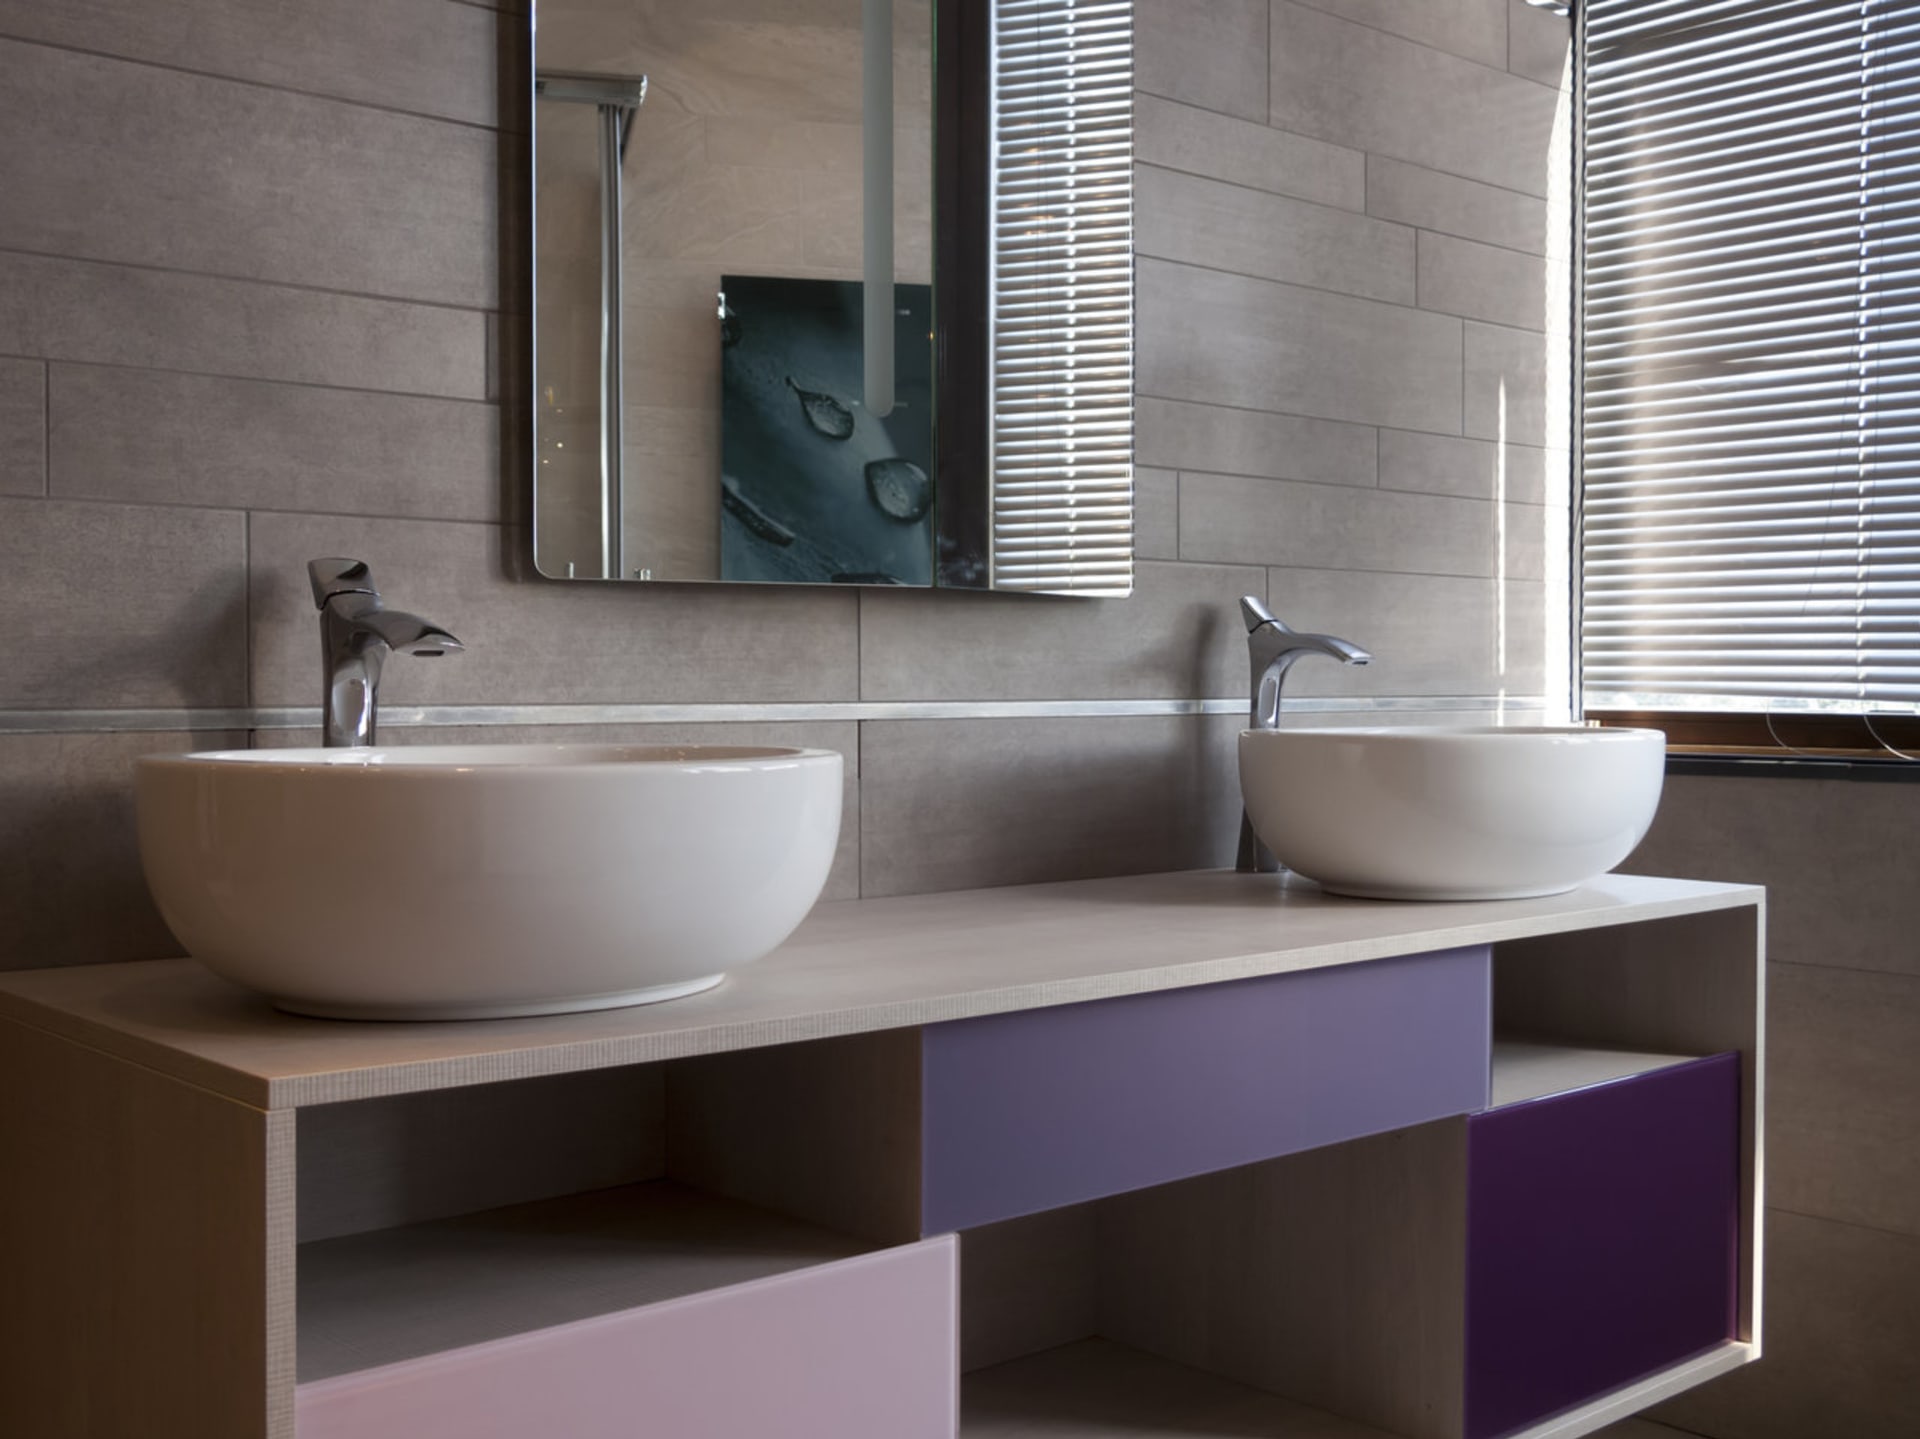 Fialová barva v interiéru: Vybírat můžete v odstínu levandulové, lila či syté fialové, která připomíná zralé švestky.